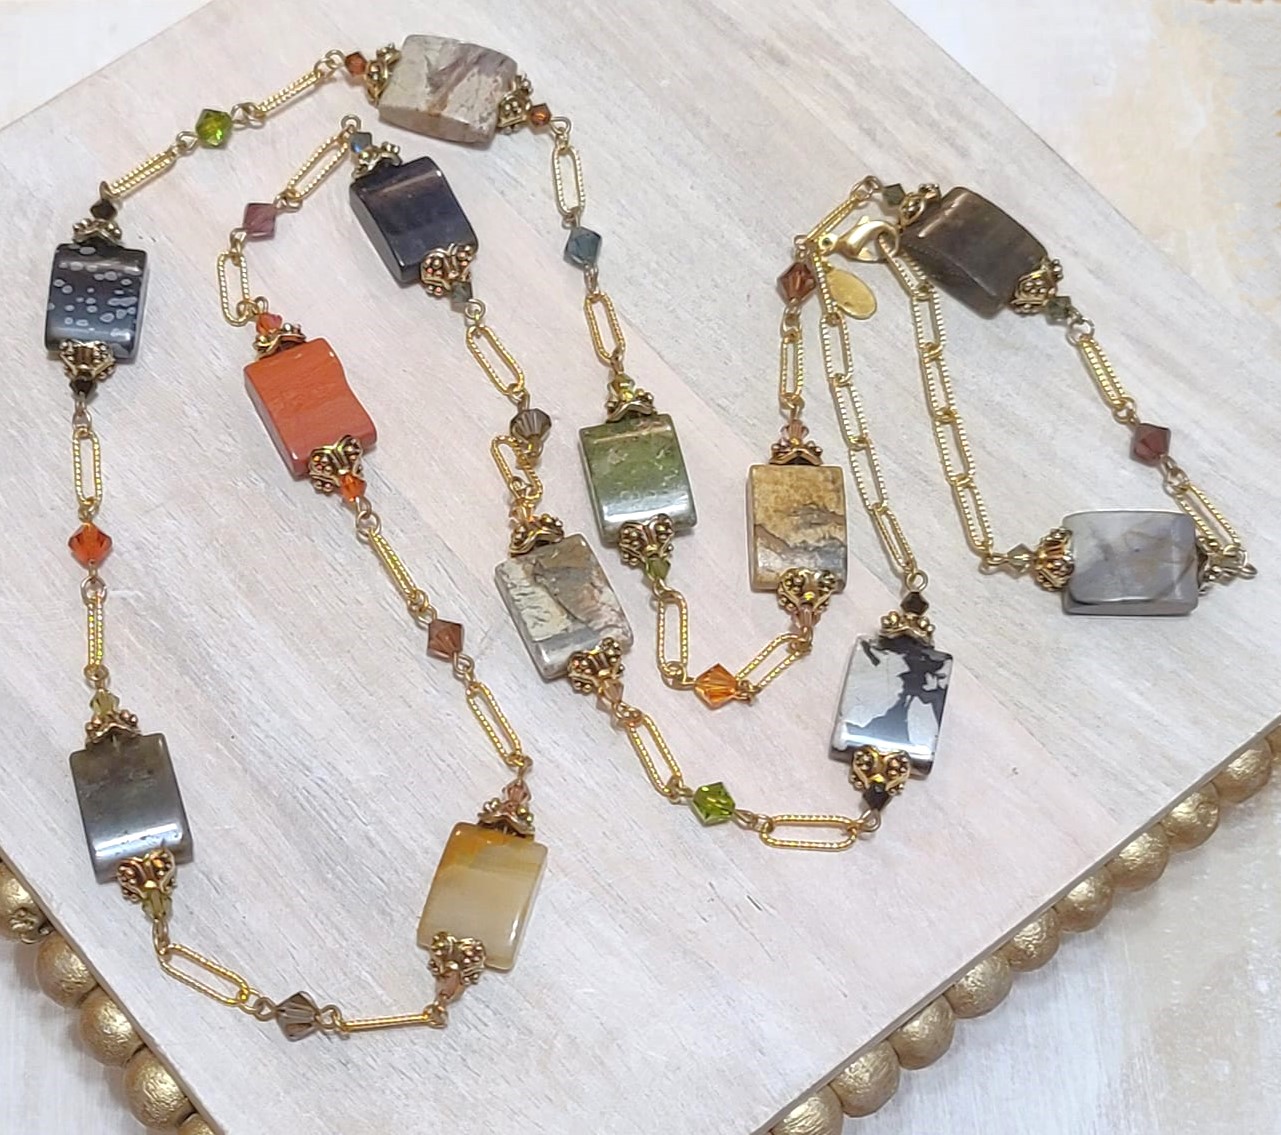 Gemstones and swarovski crystals link necklace, vintage, signed Alex.K.